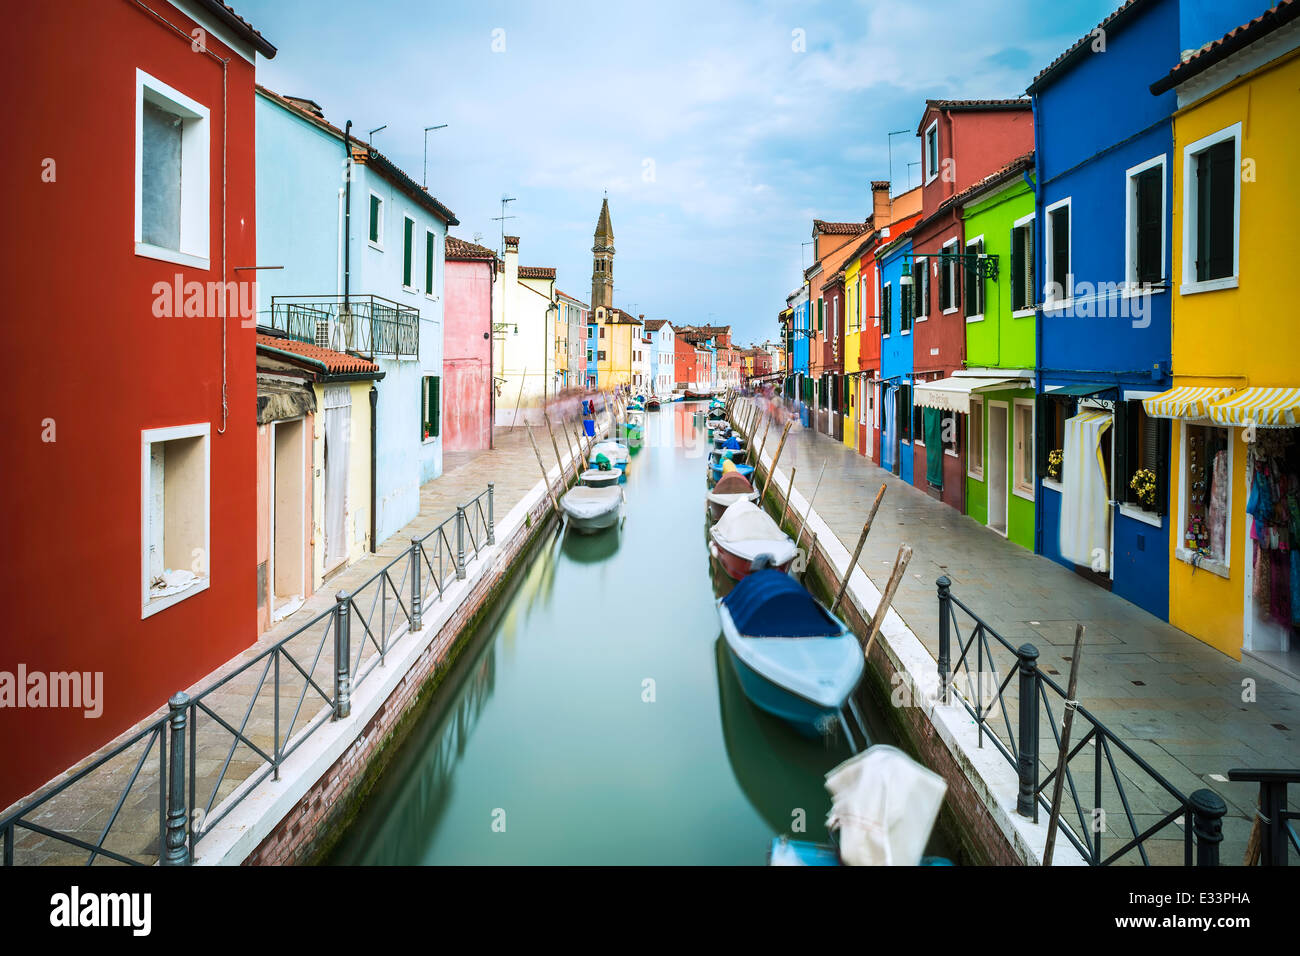 Multicolored houses in Burano, Venice Stock Photo